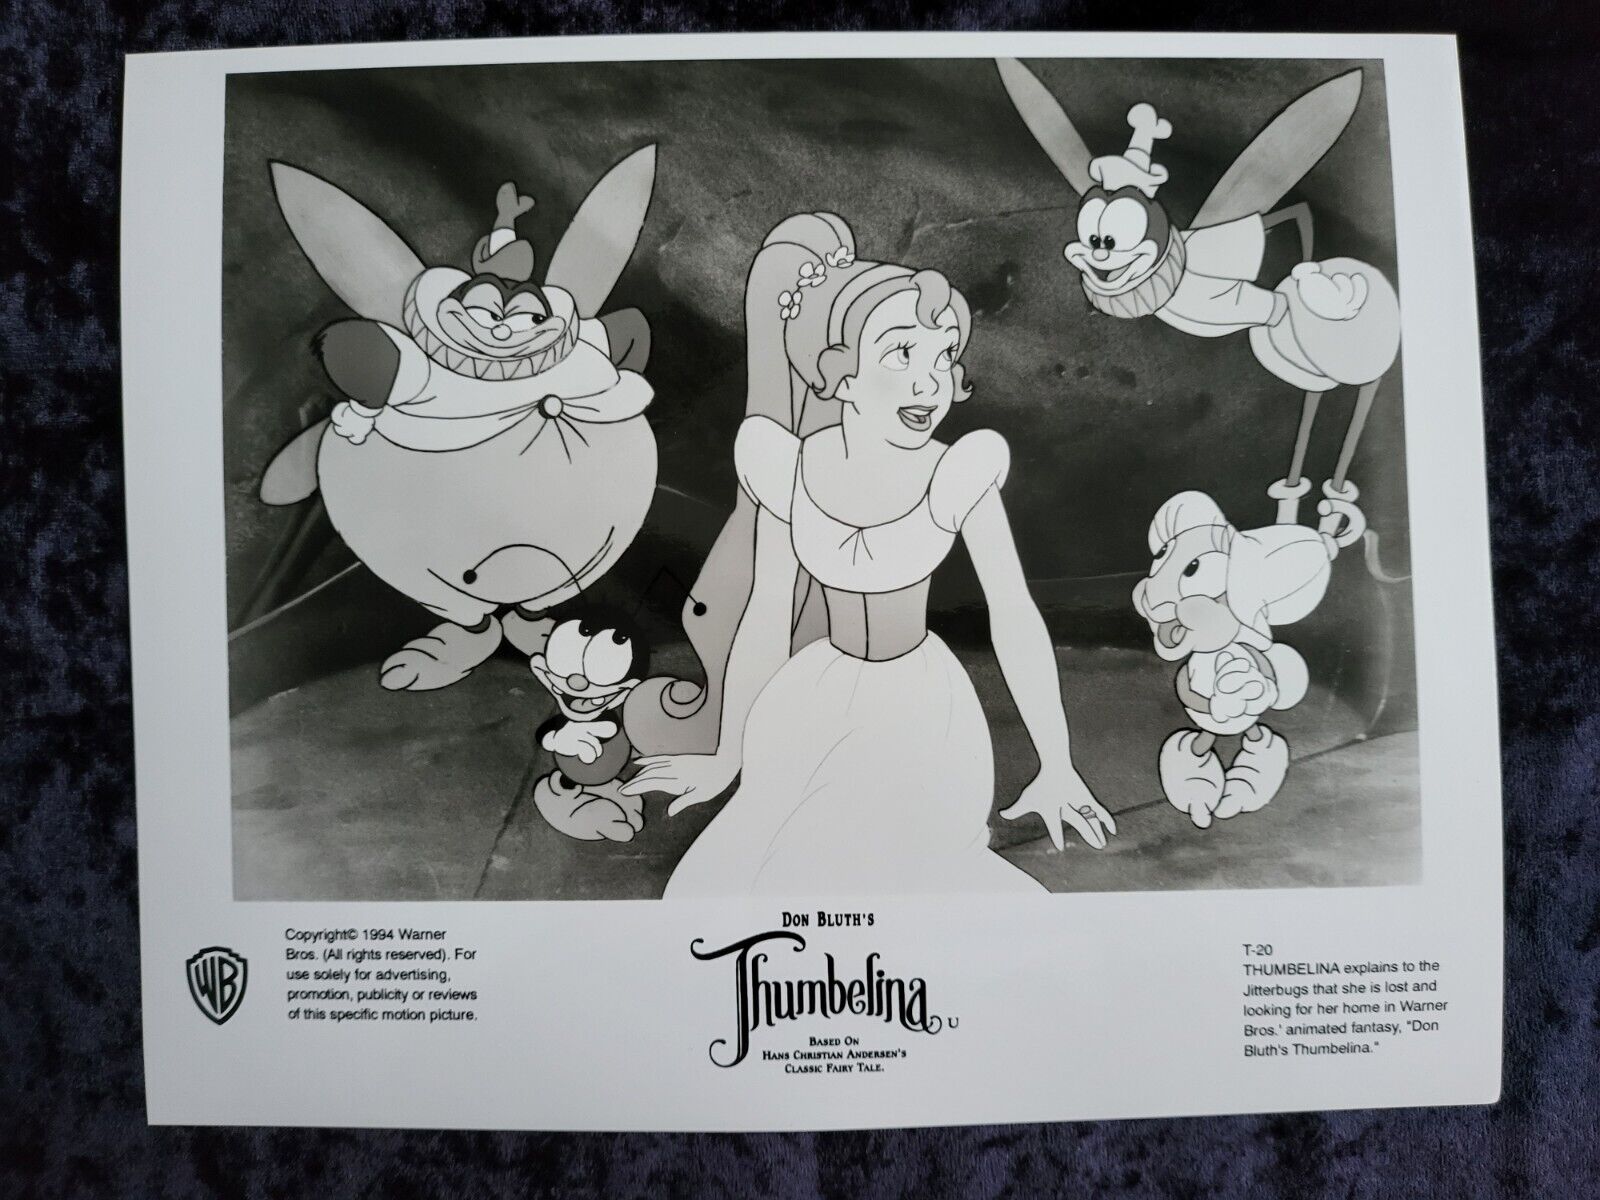 Thumbelina Original Movie Photo  #1 - Don Bluth Animation - 8 X 10